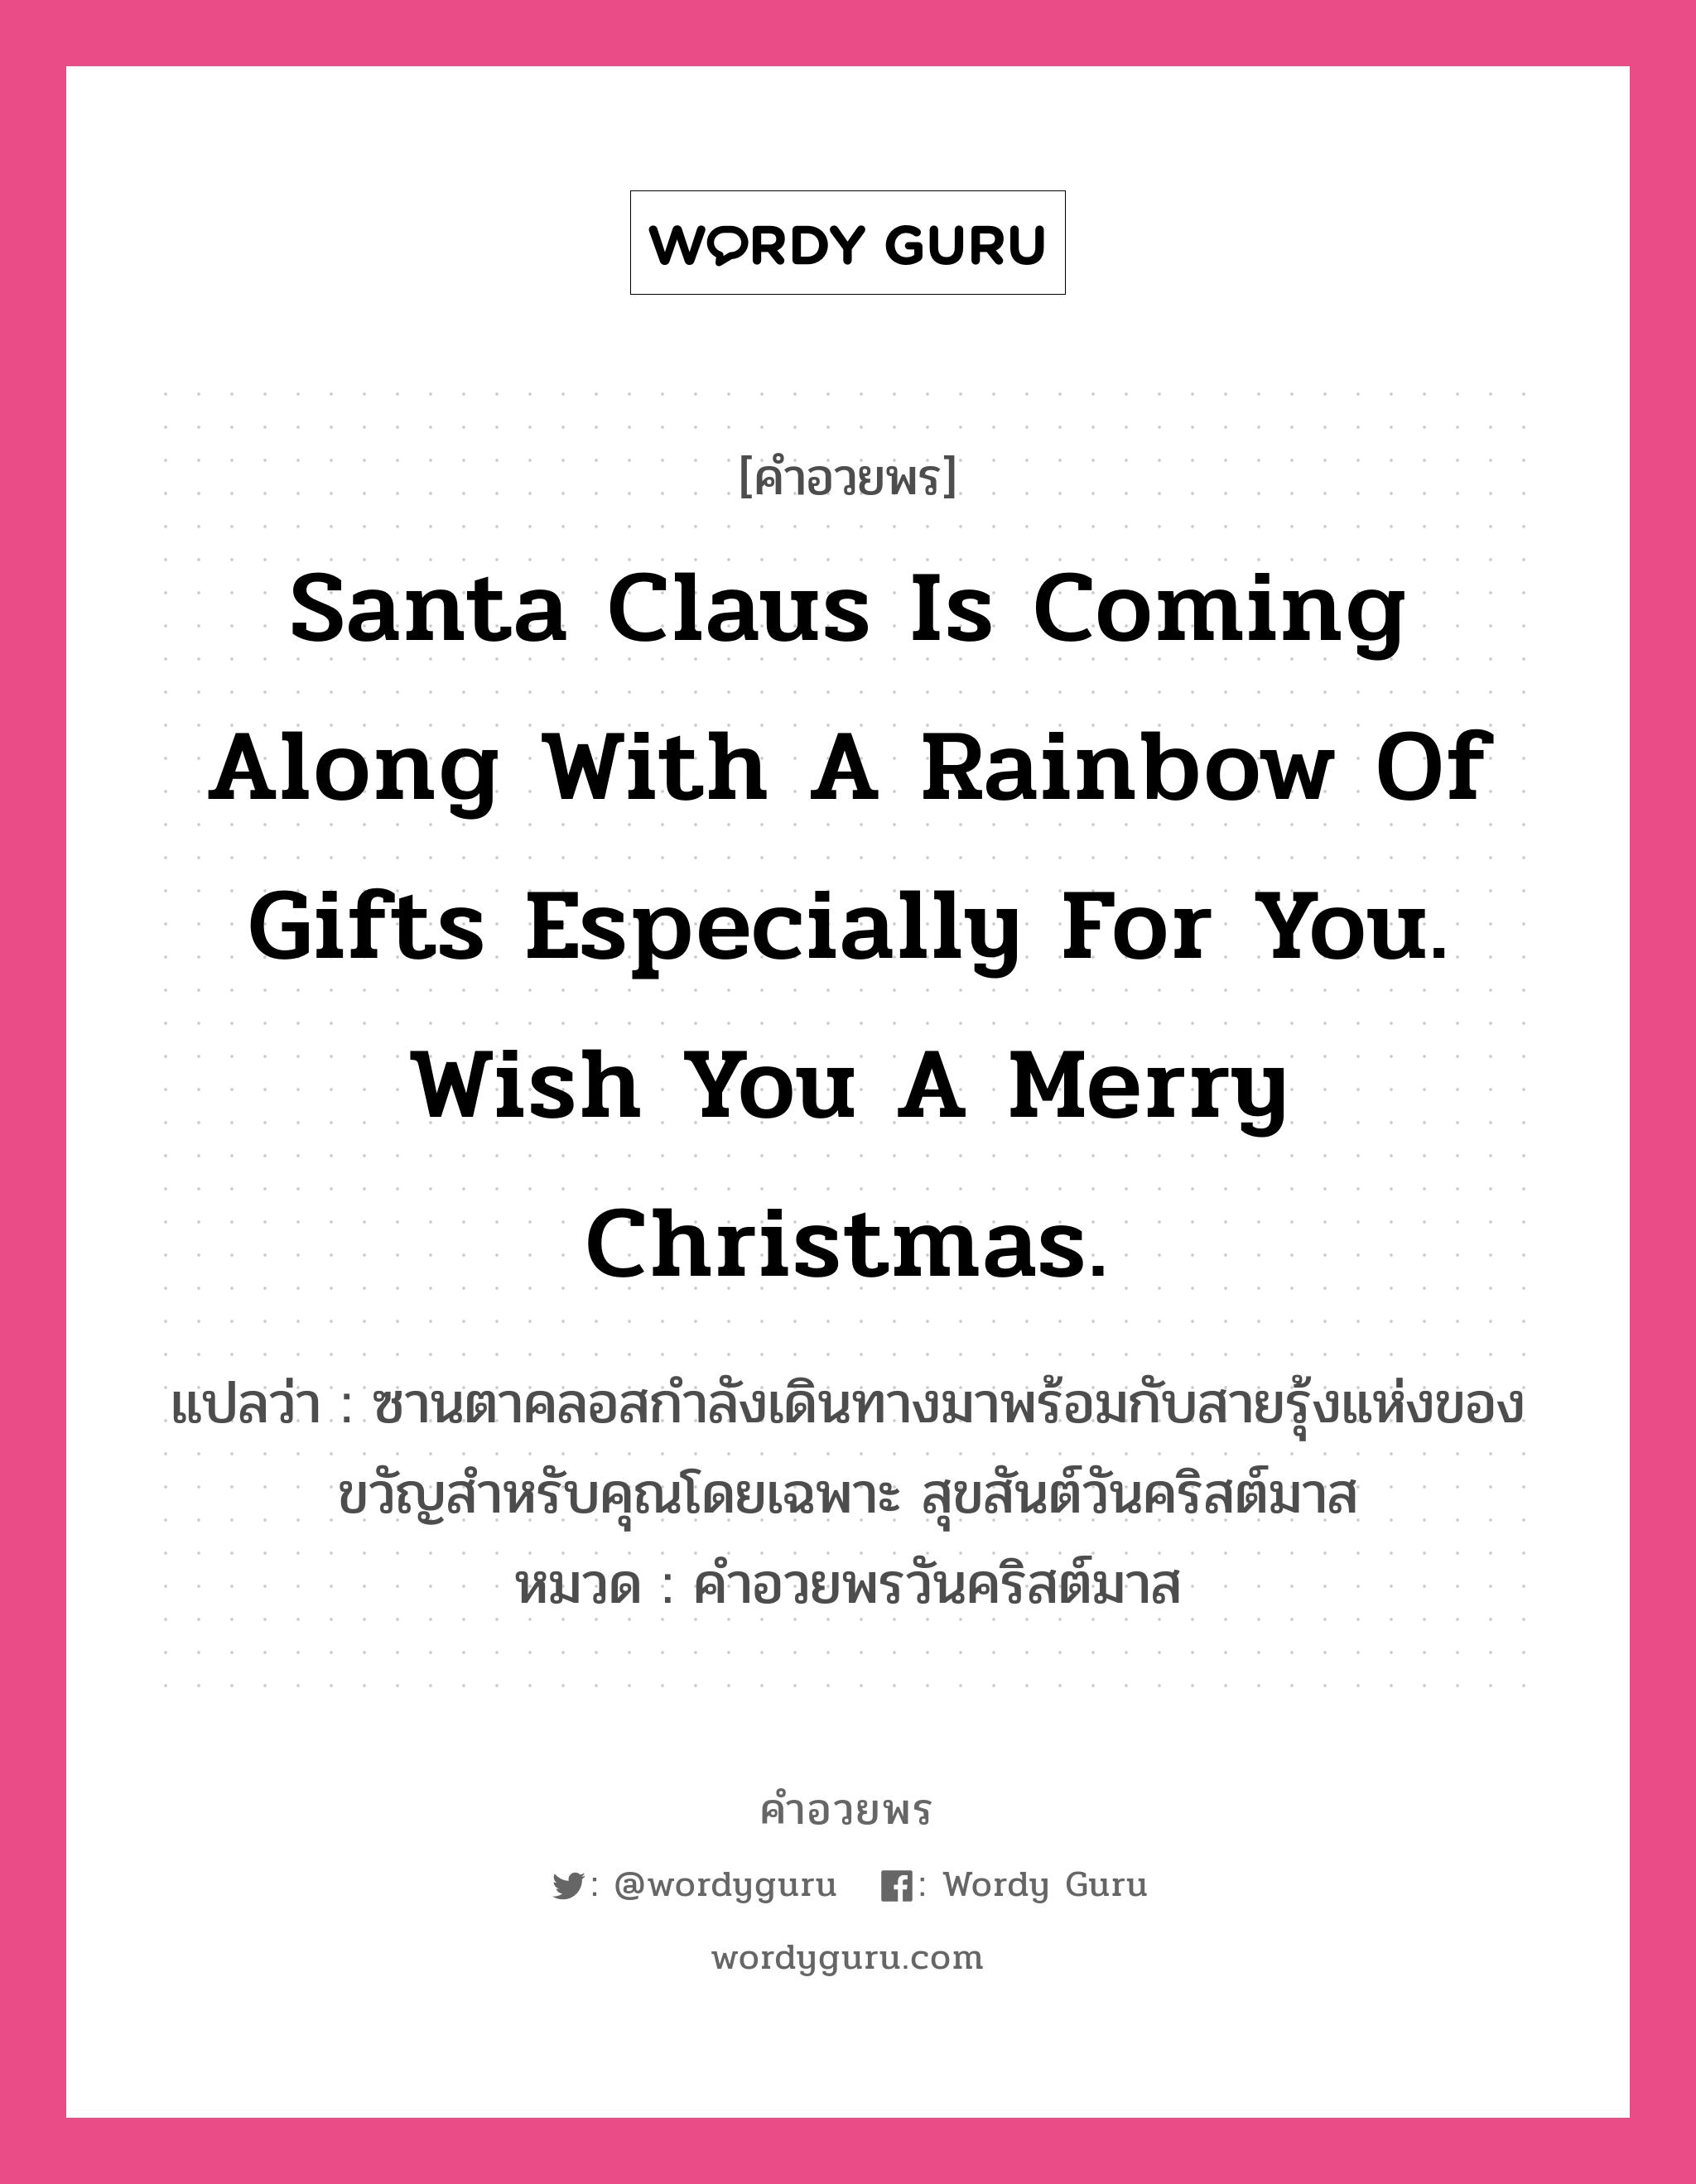 คำอวยพร Santa Claus is coming along with a rainbow of gifts especially for you. Wish you a Merry Christmas. คืออะไร?, แปลว่า ซานตาคลอสกำลังเดินทางมาพร้อมกับสายรุ้งแห่งของขวัญสำหรับคุณโดยเฉพาะ สุขสันต์วันคริสต์มาส หมวด คำอวยพรวันคริสต์มาส หมวด คำอวยพรวันคริสต์มาส